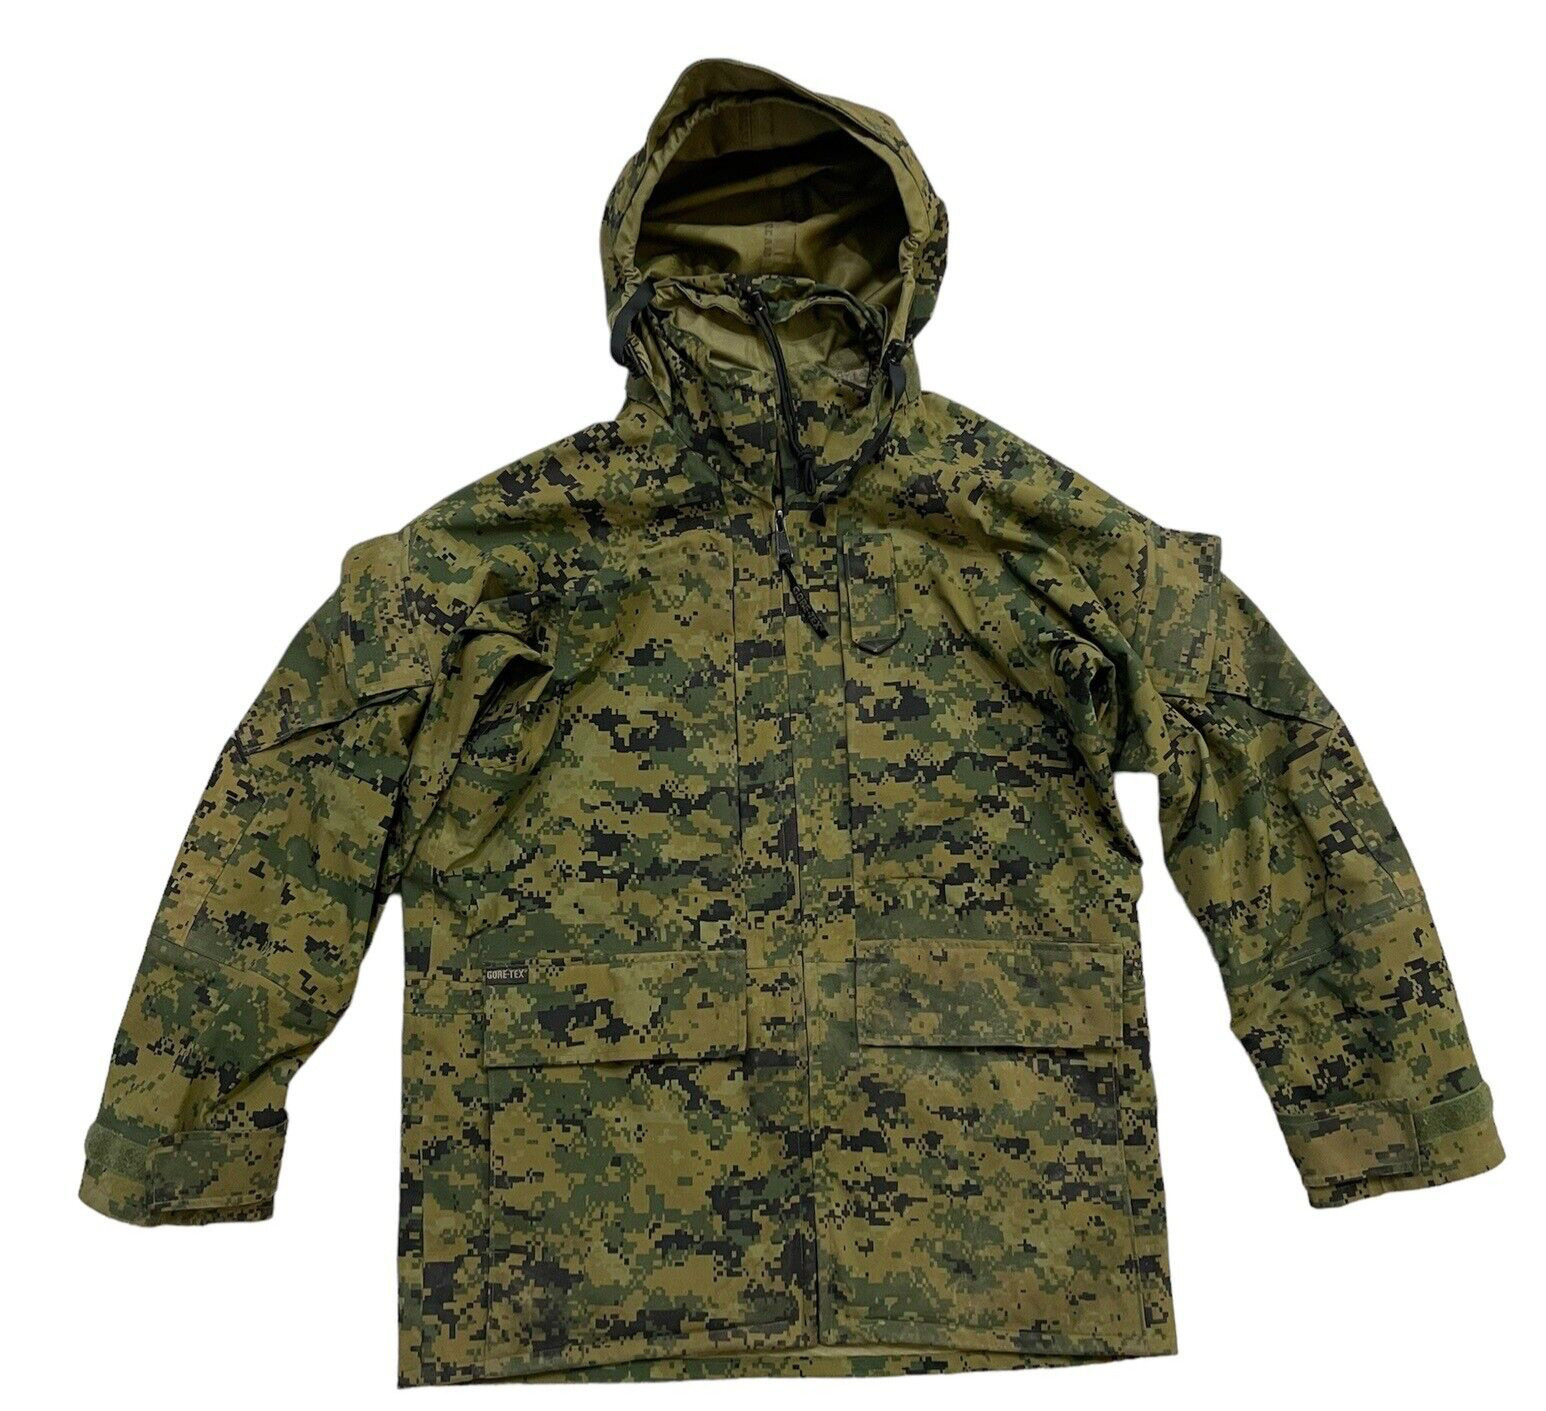 PROPPER mens sz S Gore Tex parka jacket APEC MARPAT USMC digital camouflage EUC